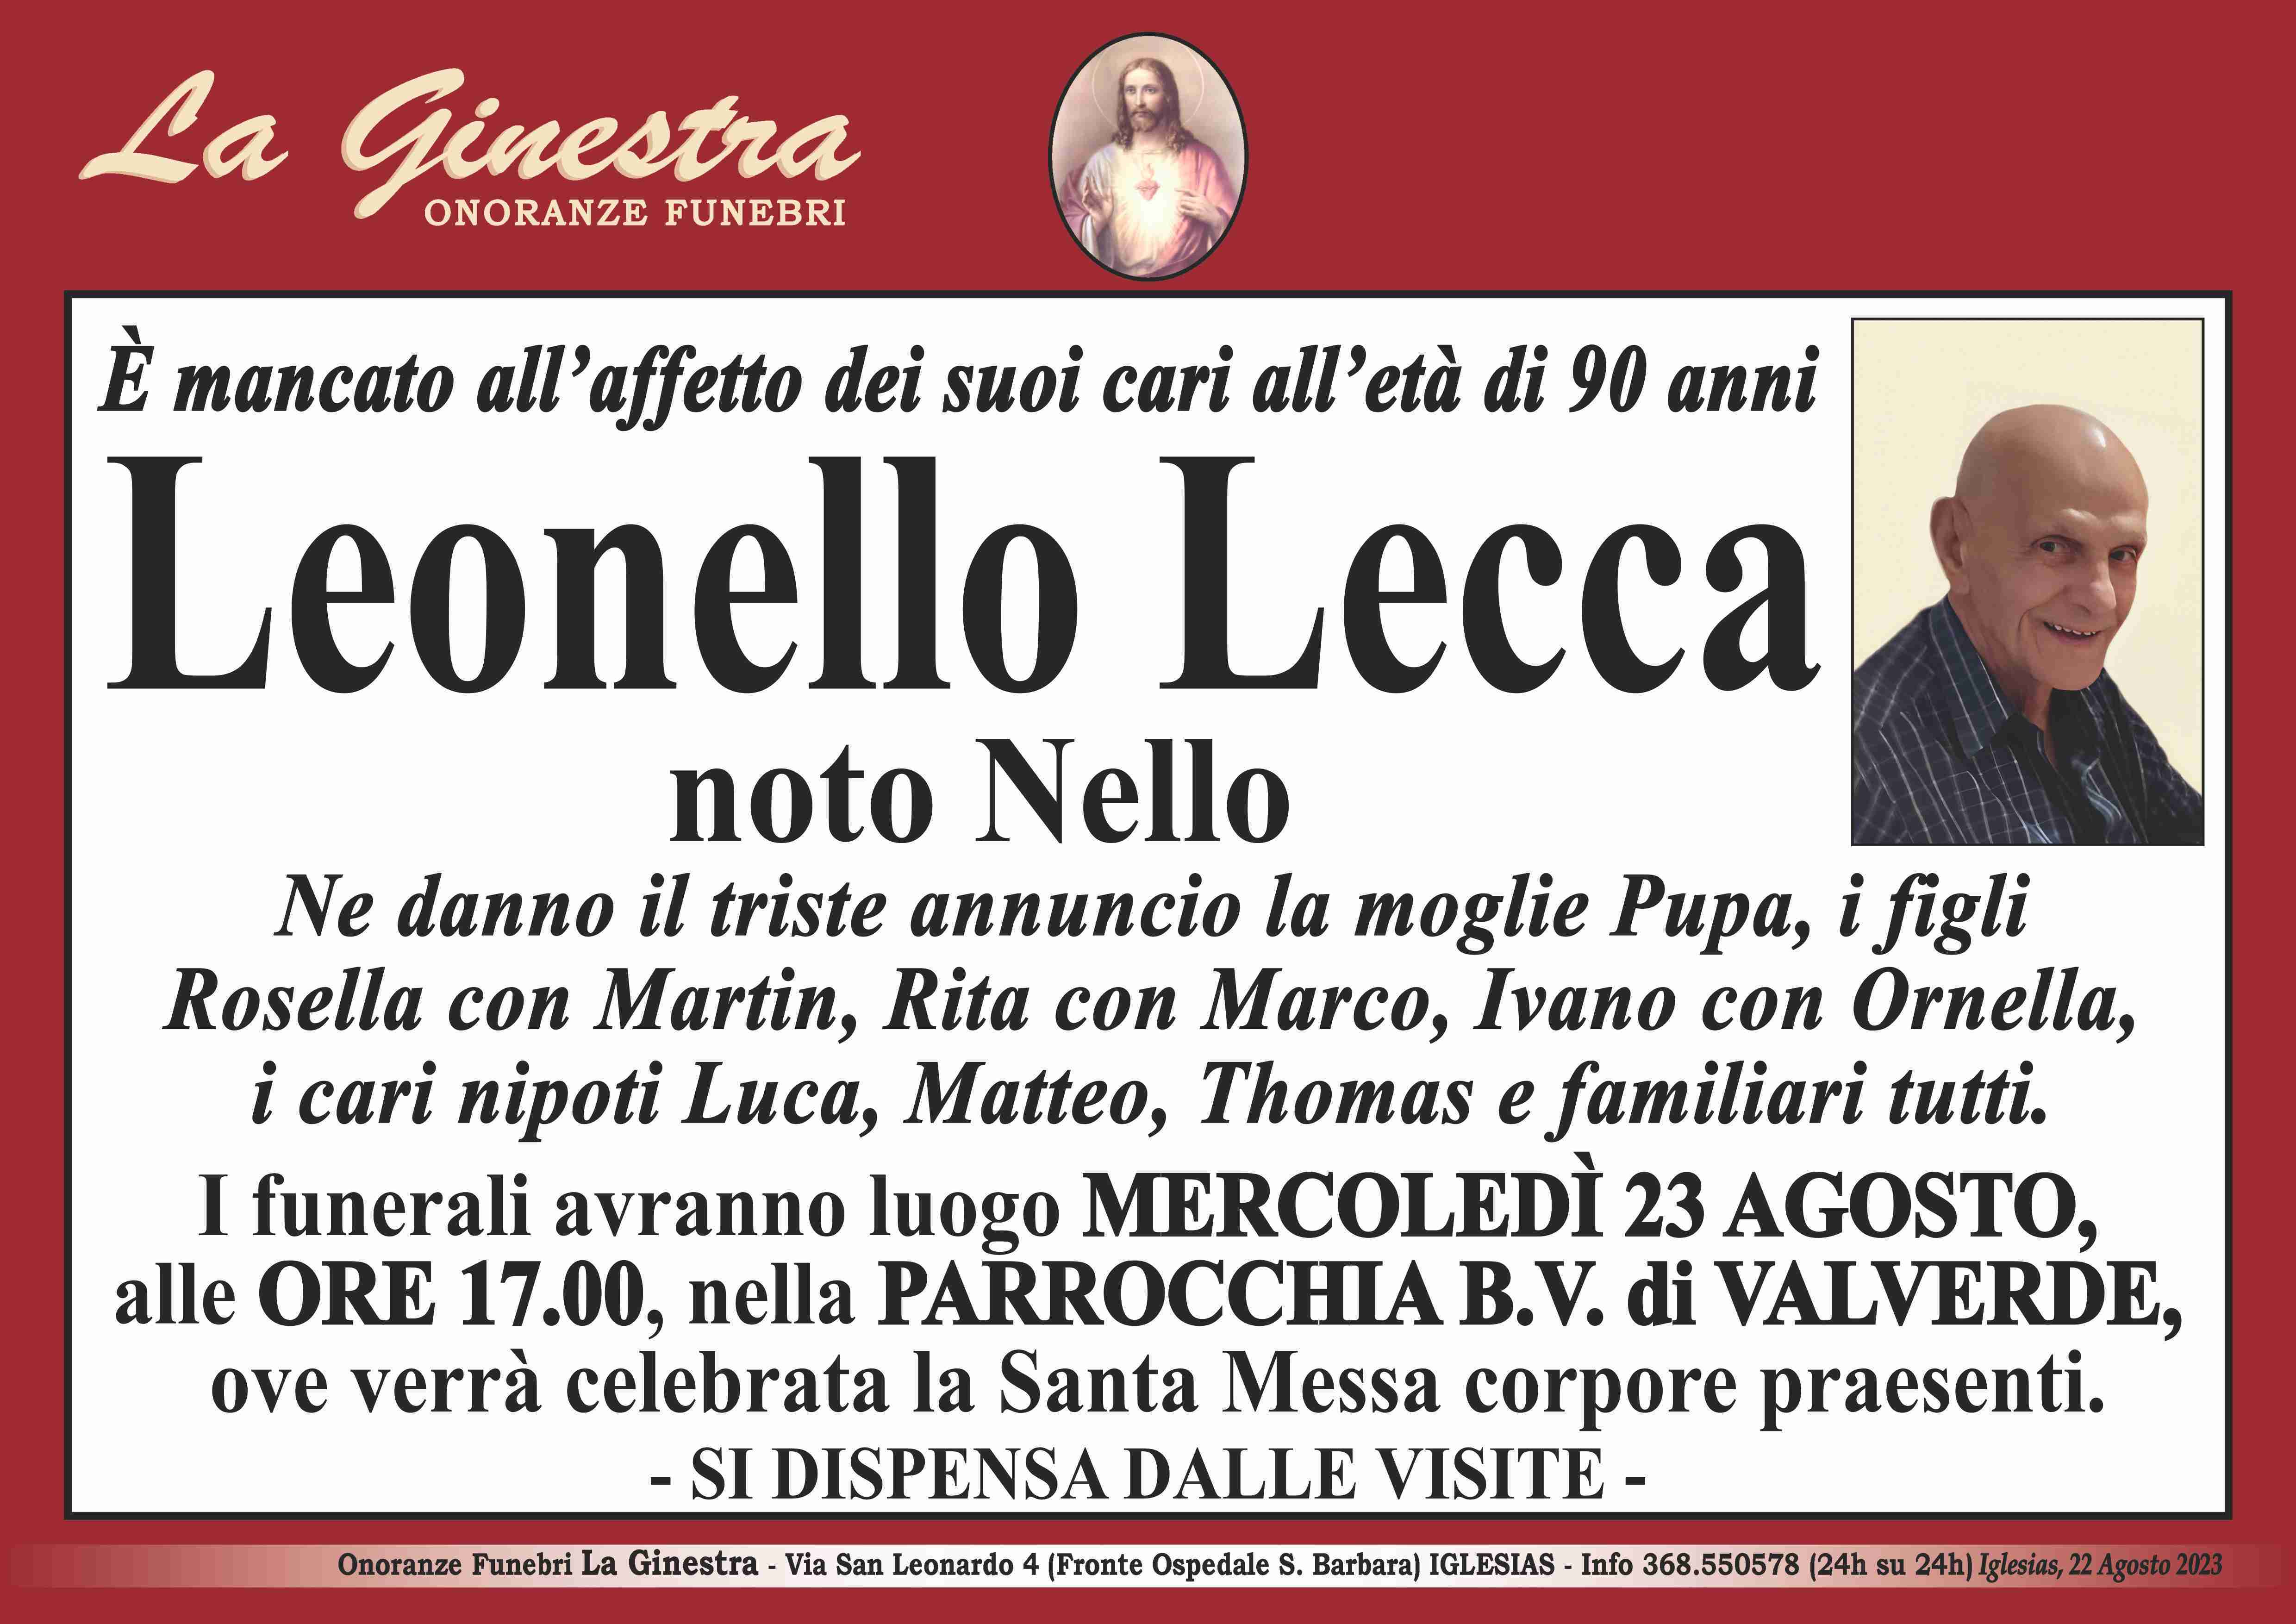 Leonello Lecca